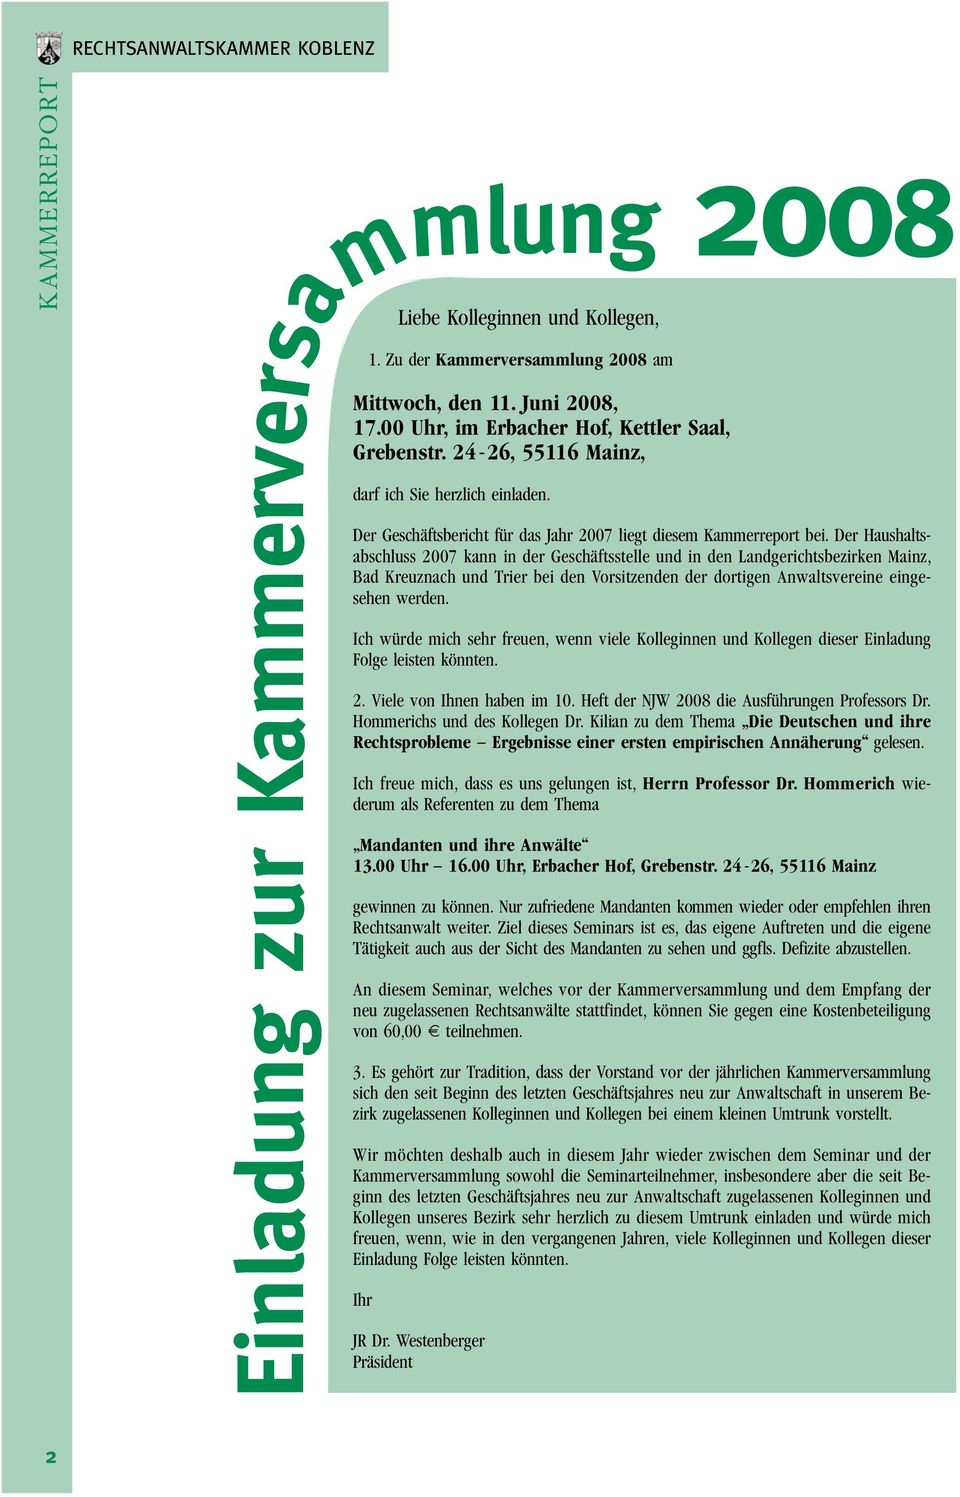 Der Haushaltsabschluss 2007 kann in der Geschäftsstelle und in den Landgerichtsbezirken Mainz, Bad Kreuznach und Trier bei den Vorsitzenden der dortigen Anwaltsvereine eingesehen werden.